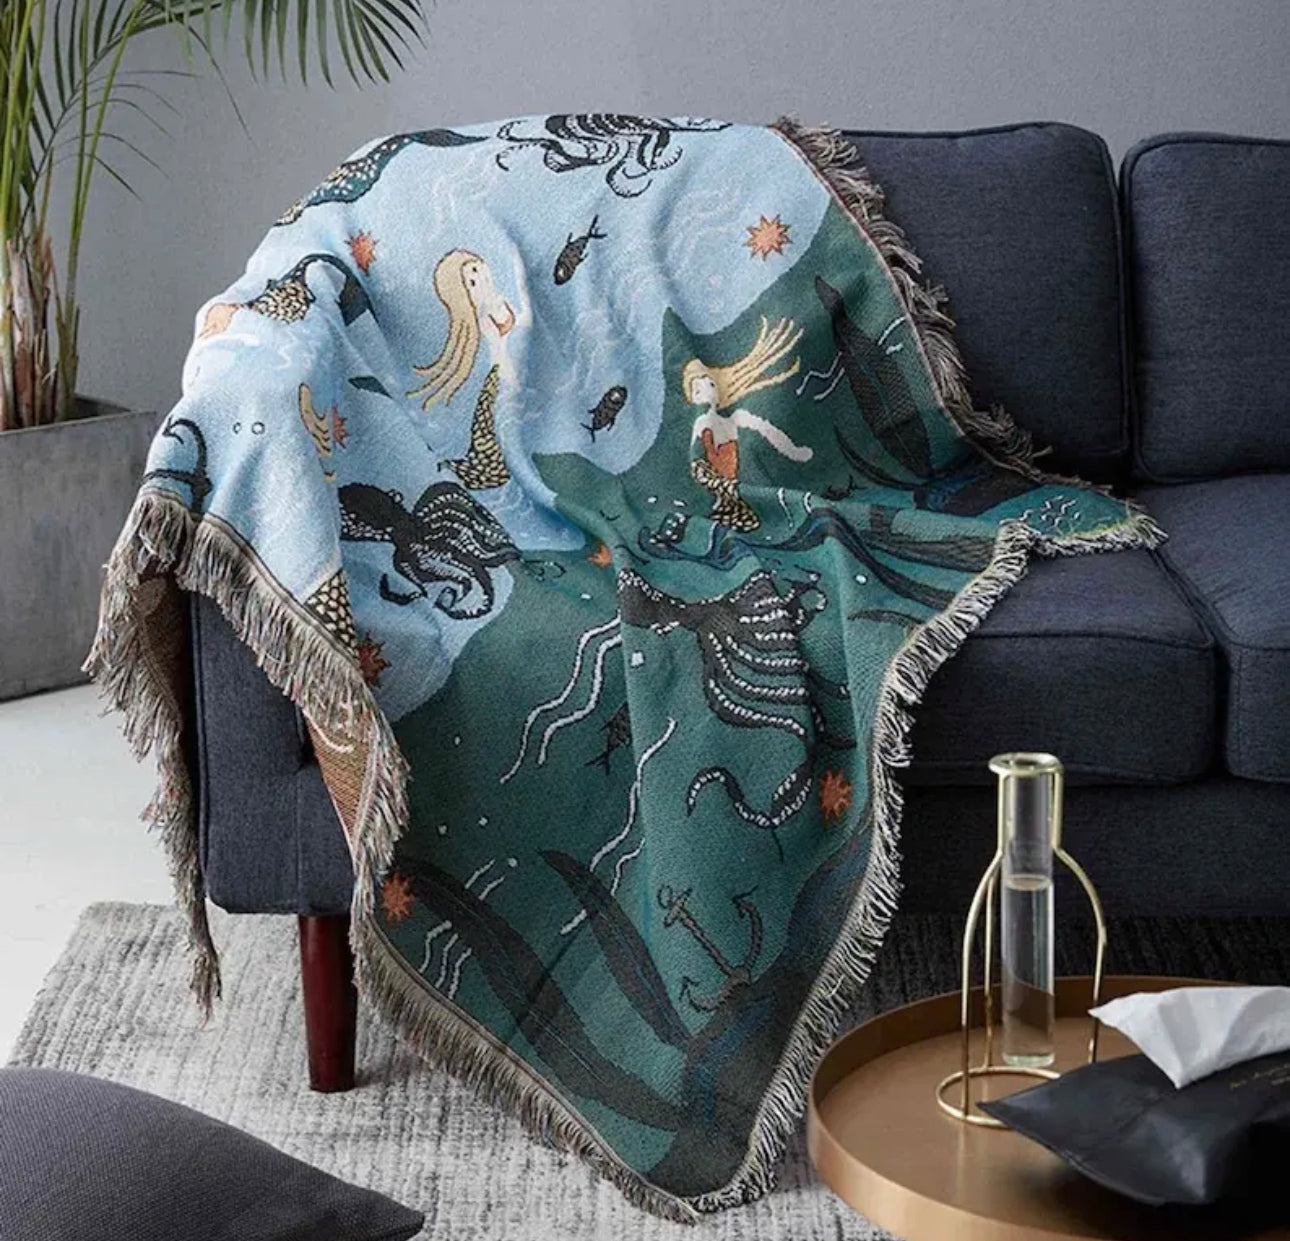 Mermaids woven blankets 50x60”